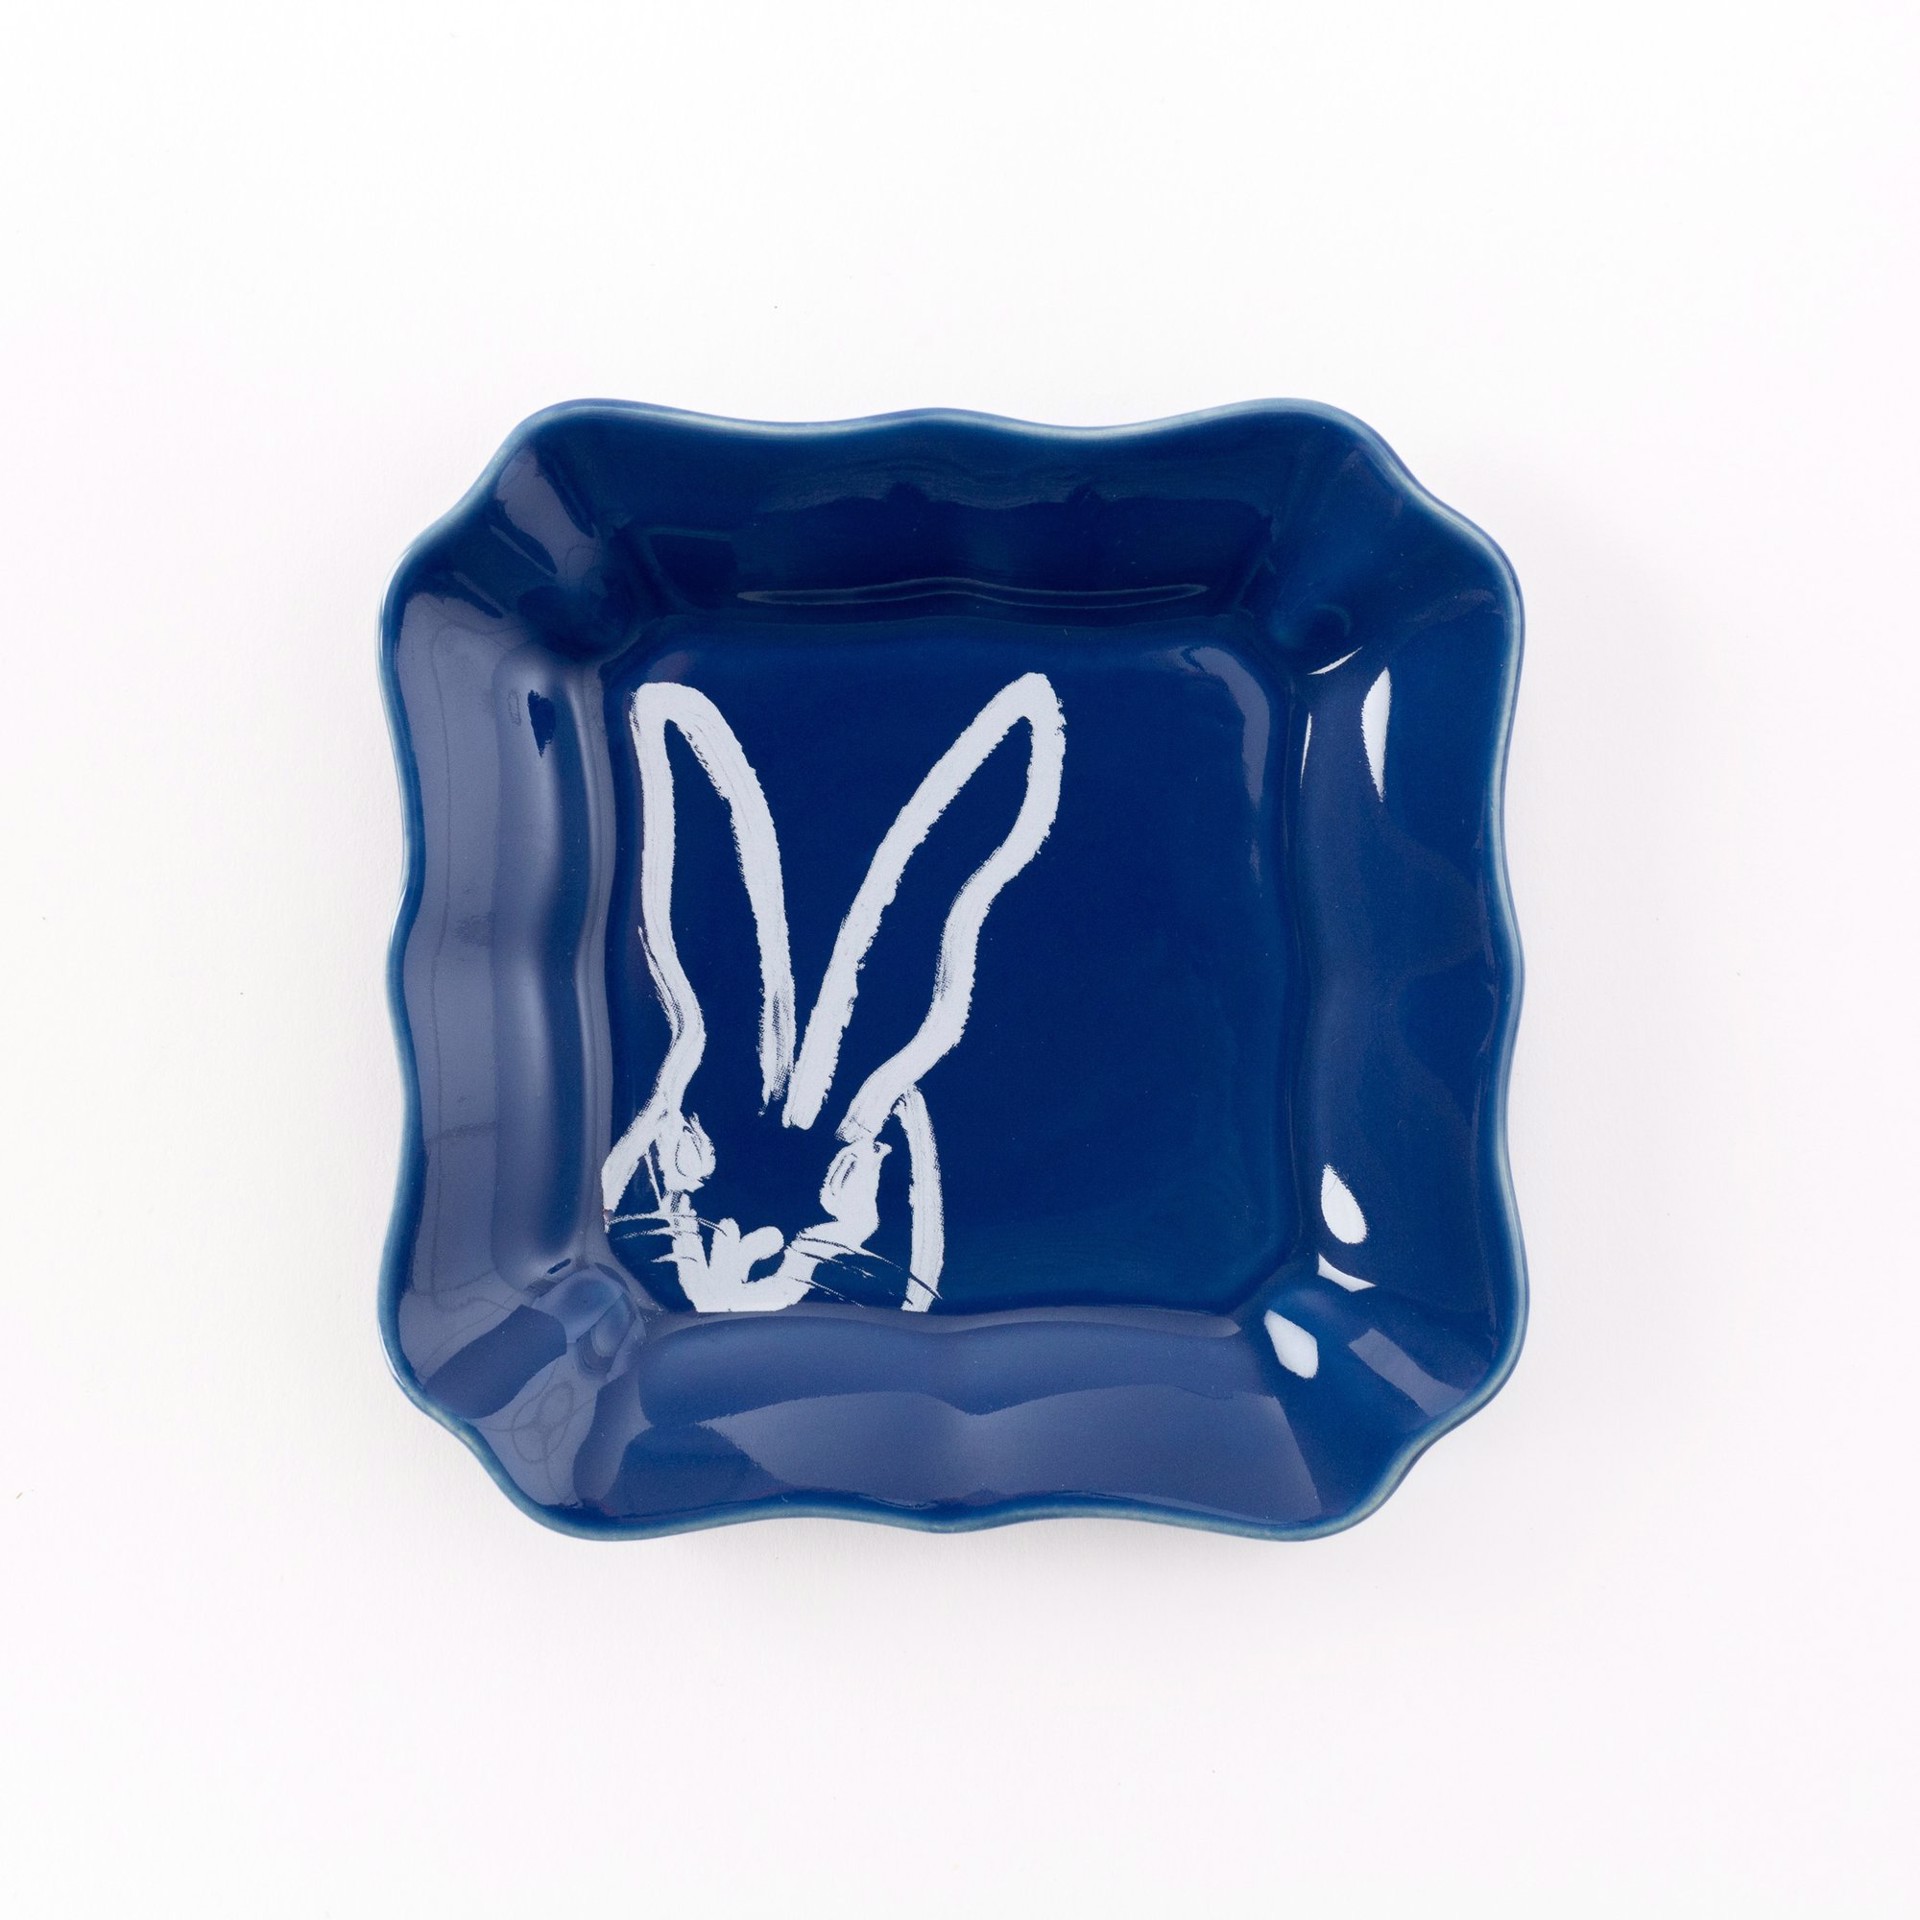 Bunny Portrait Plate - Blue by Hunt Slonem (Hop Up Shop)